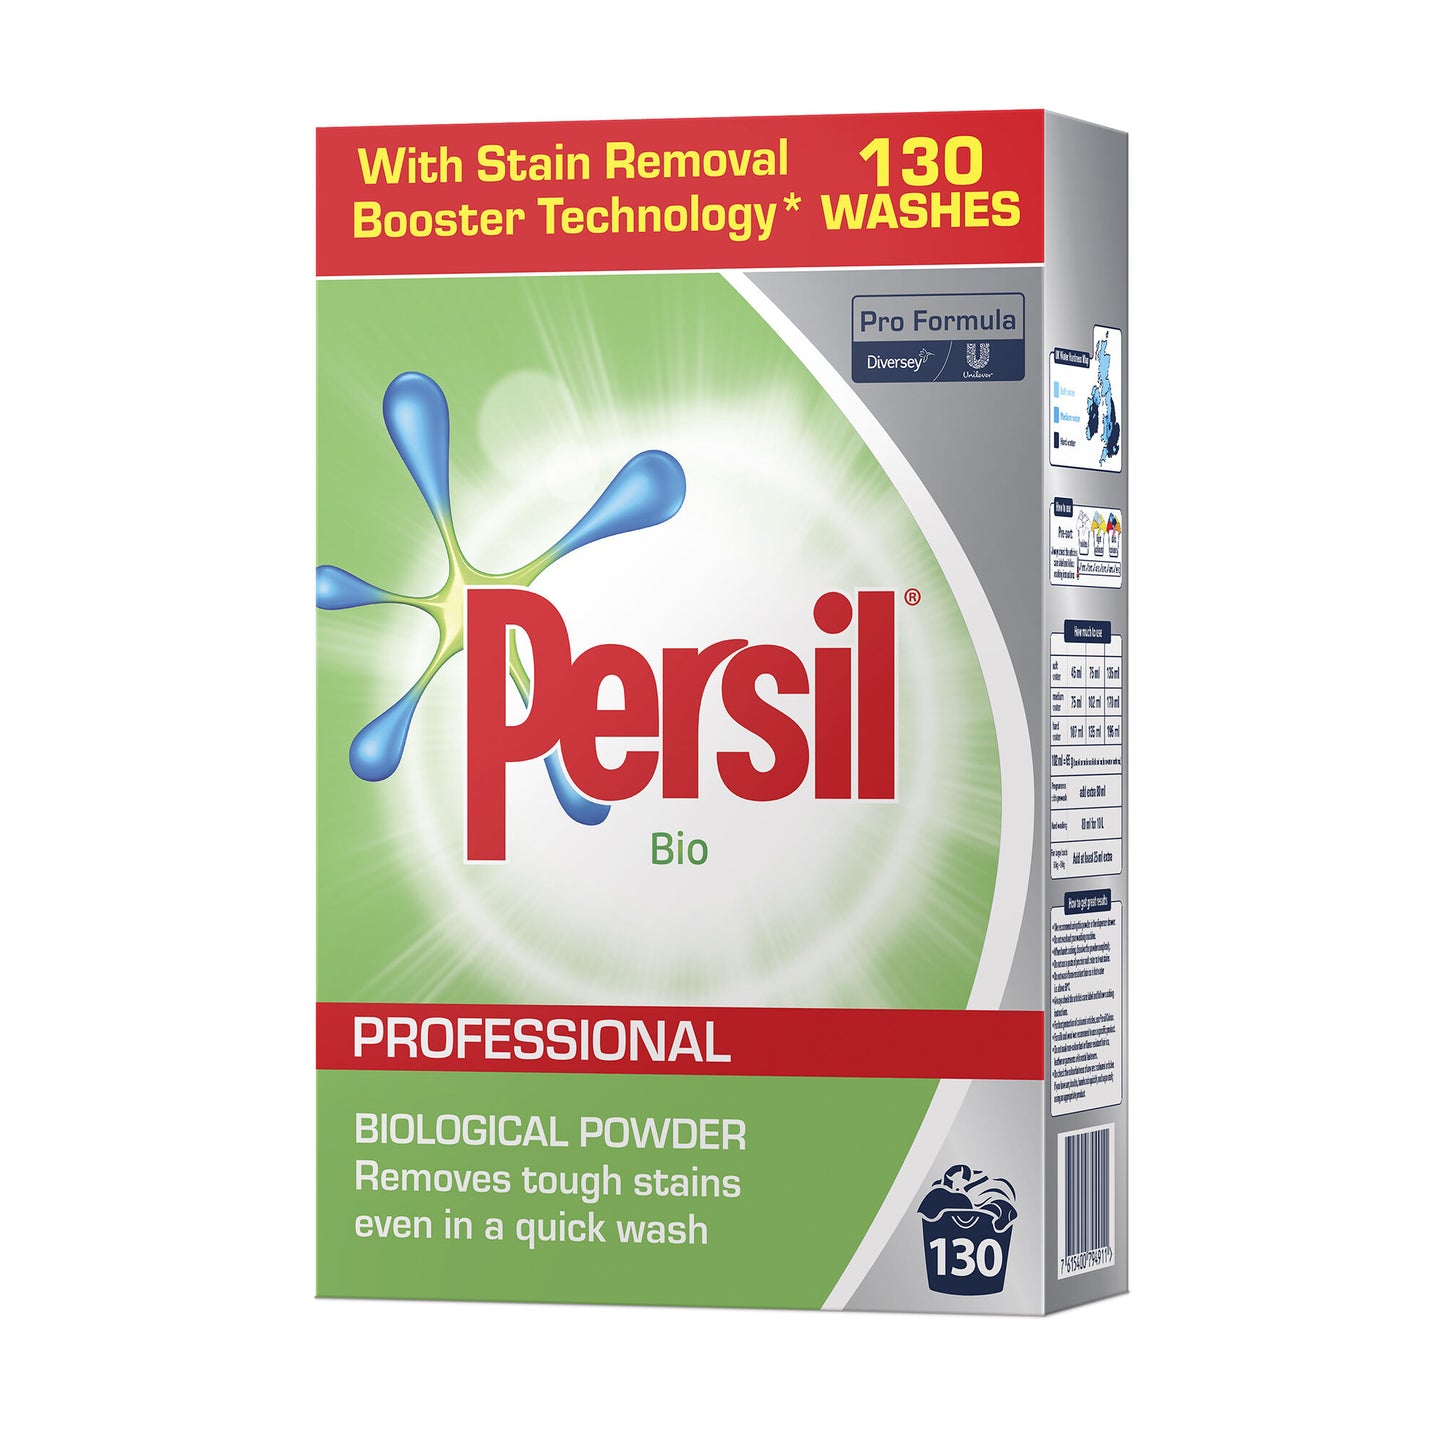 Diversey Persil Bio Pro Formula Professional Biological Washing Powder - 130 Washes 8.4kg